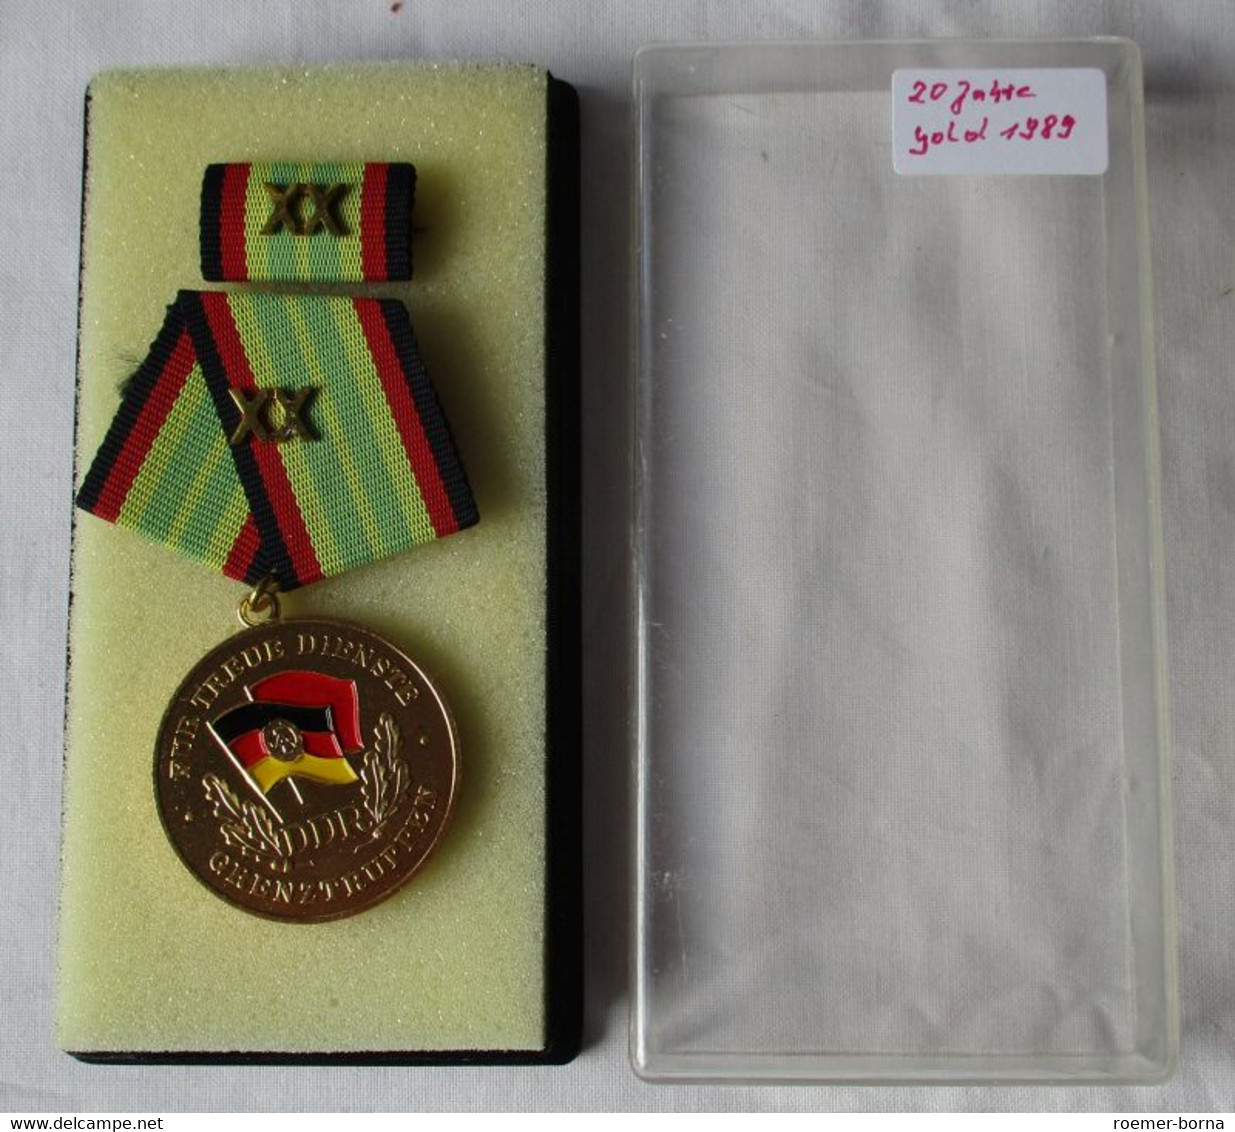 Medaille Für Treue Dienste In Den Grenztruppen Der DDR Gold F. 20 Jahre (153910) - RDT